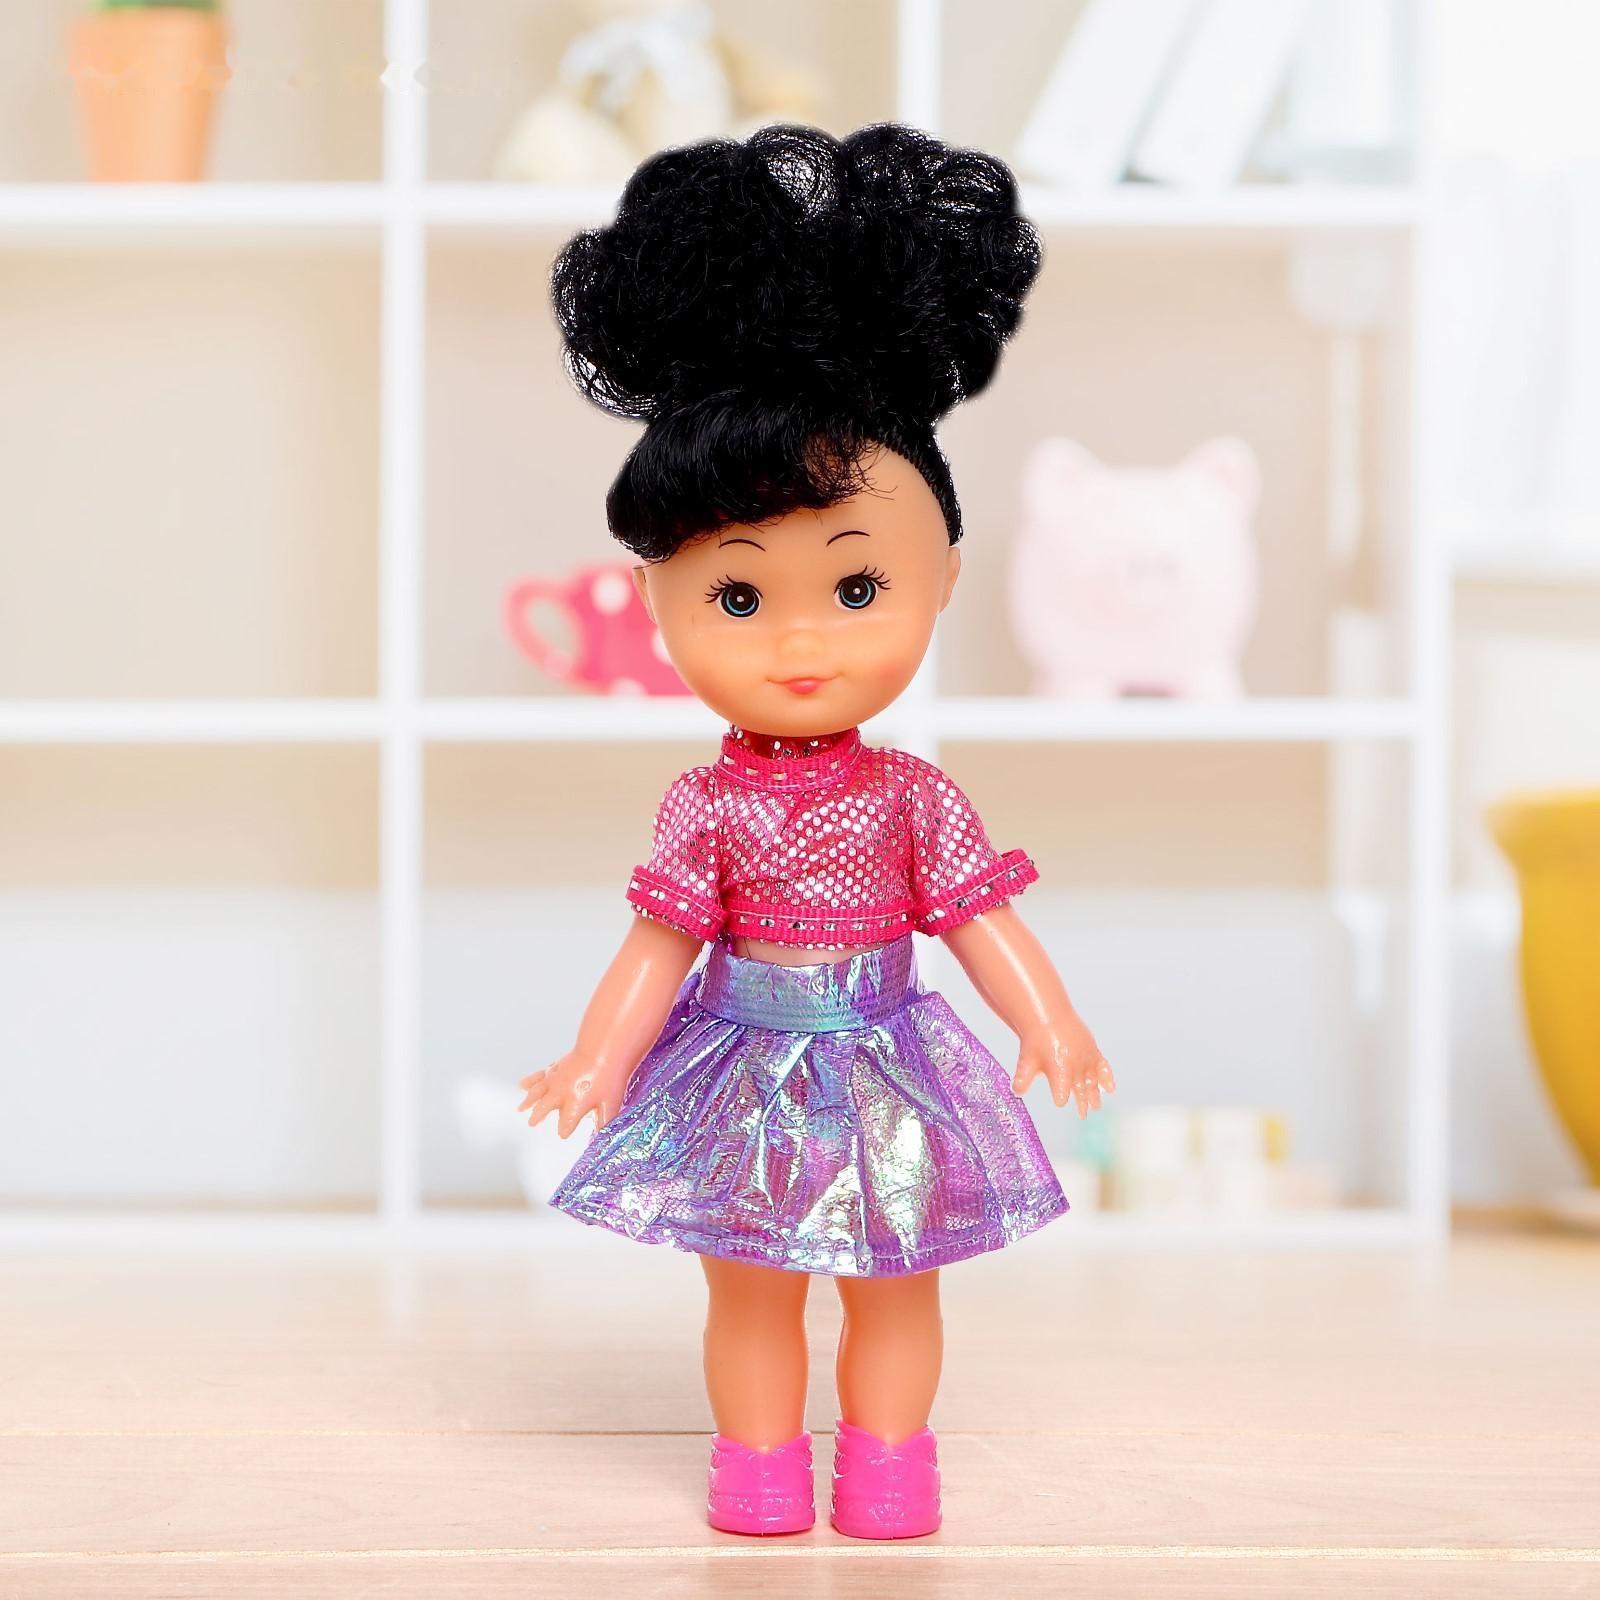 Кукла классическая «Крошка Сью» в платье, 17 см, МИКС